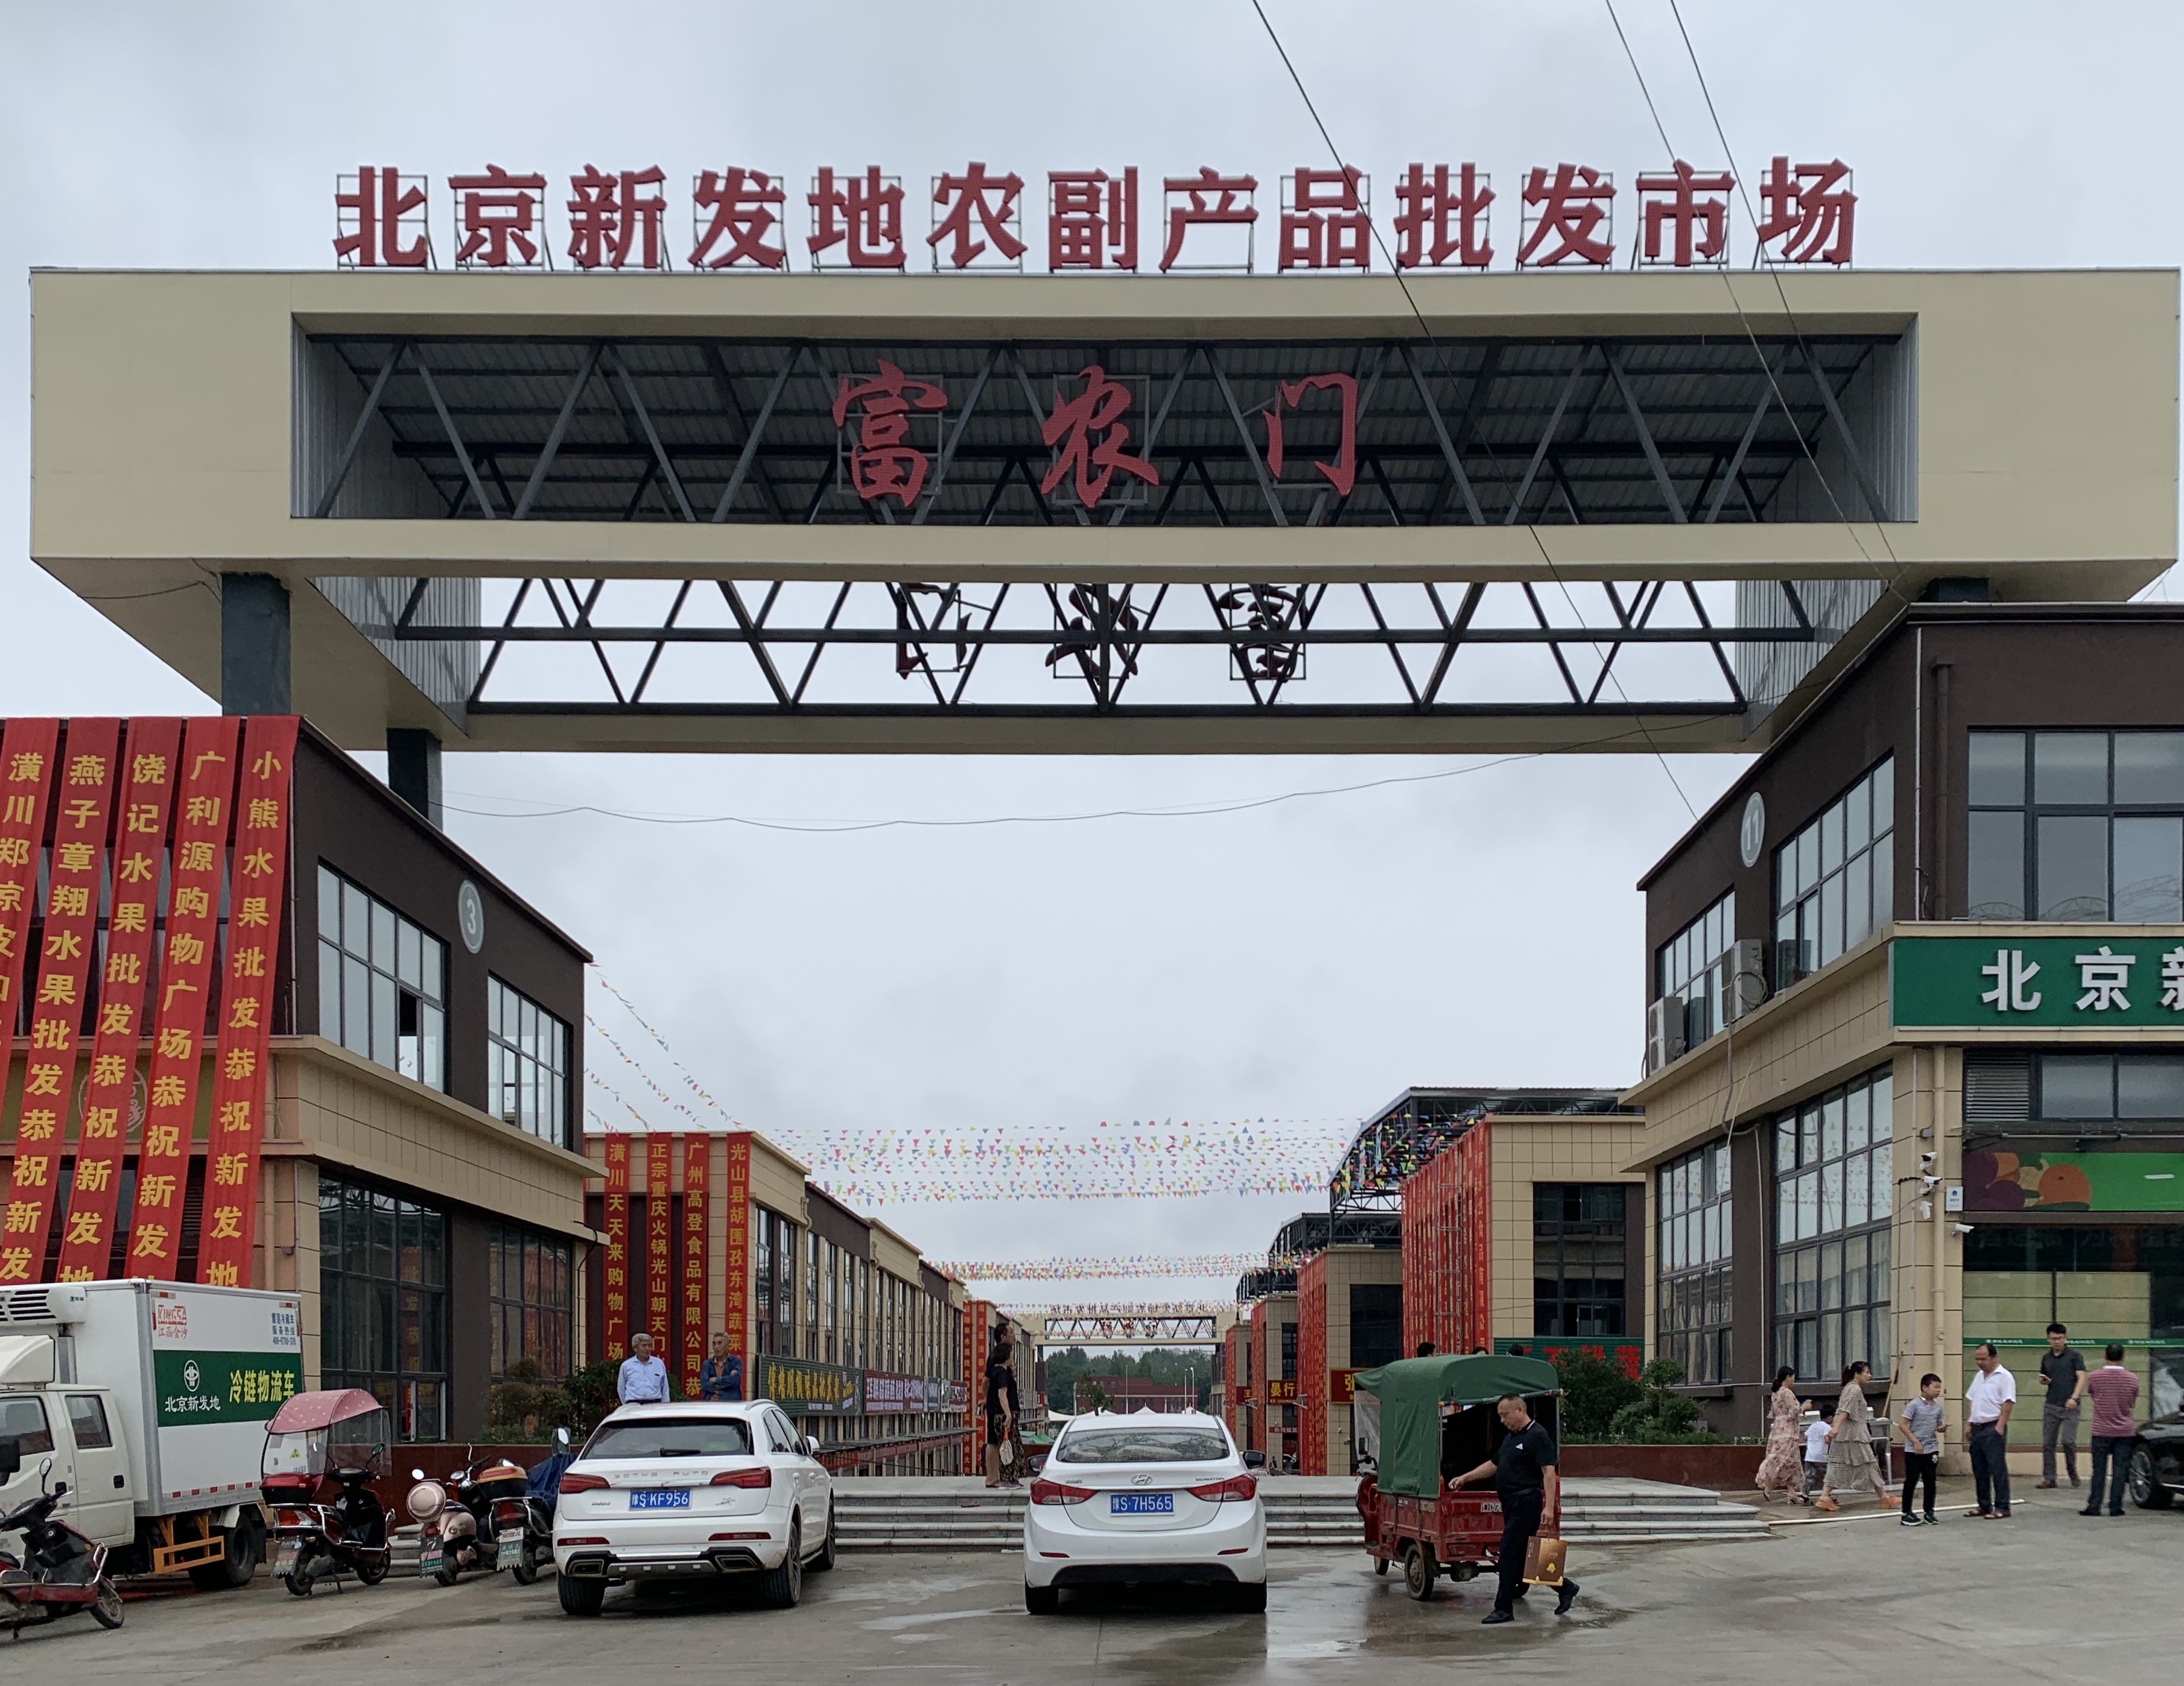 6月26日,北京新发地光山农副产品批发市场正式开业.